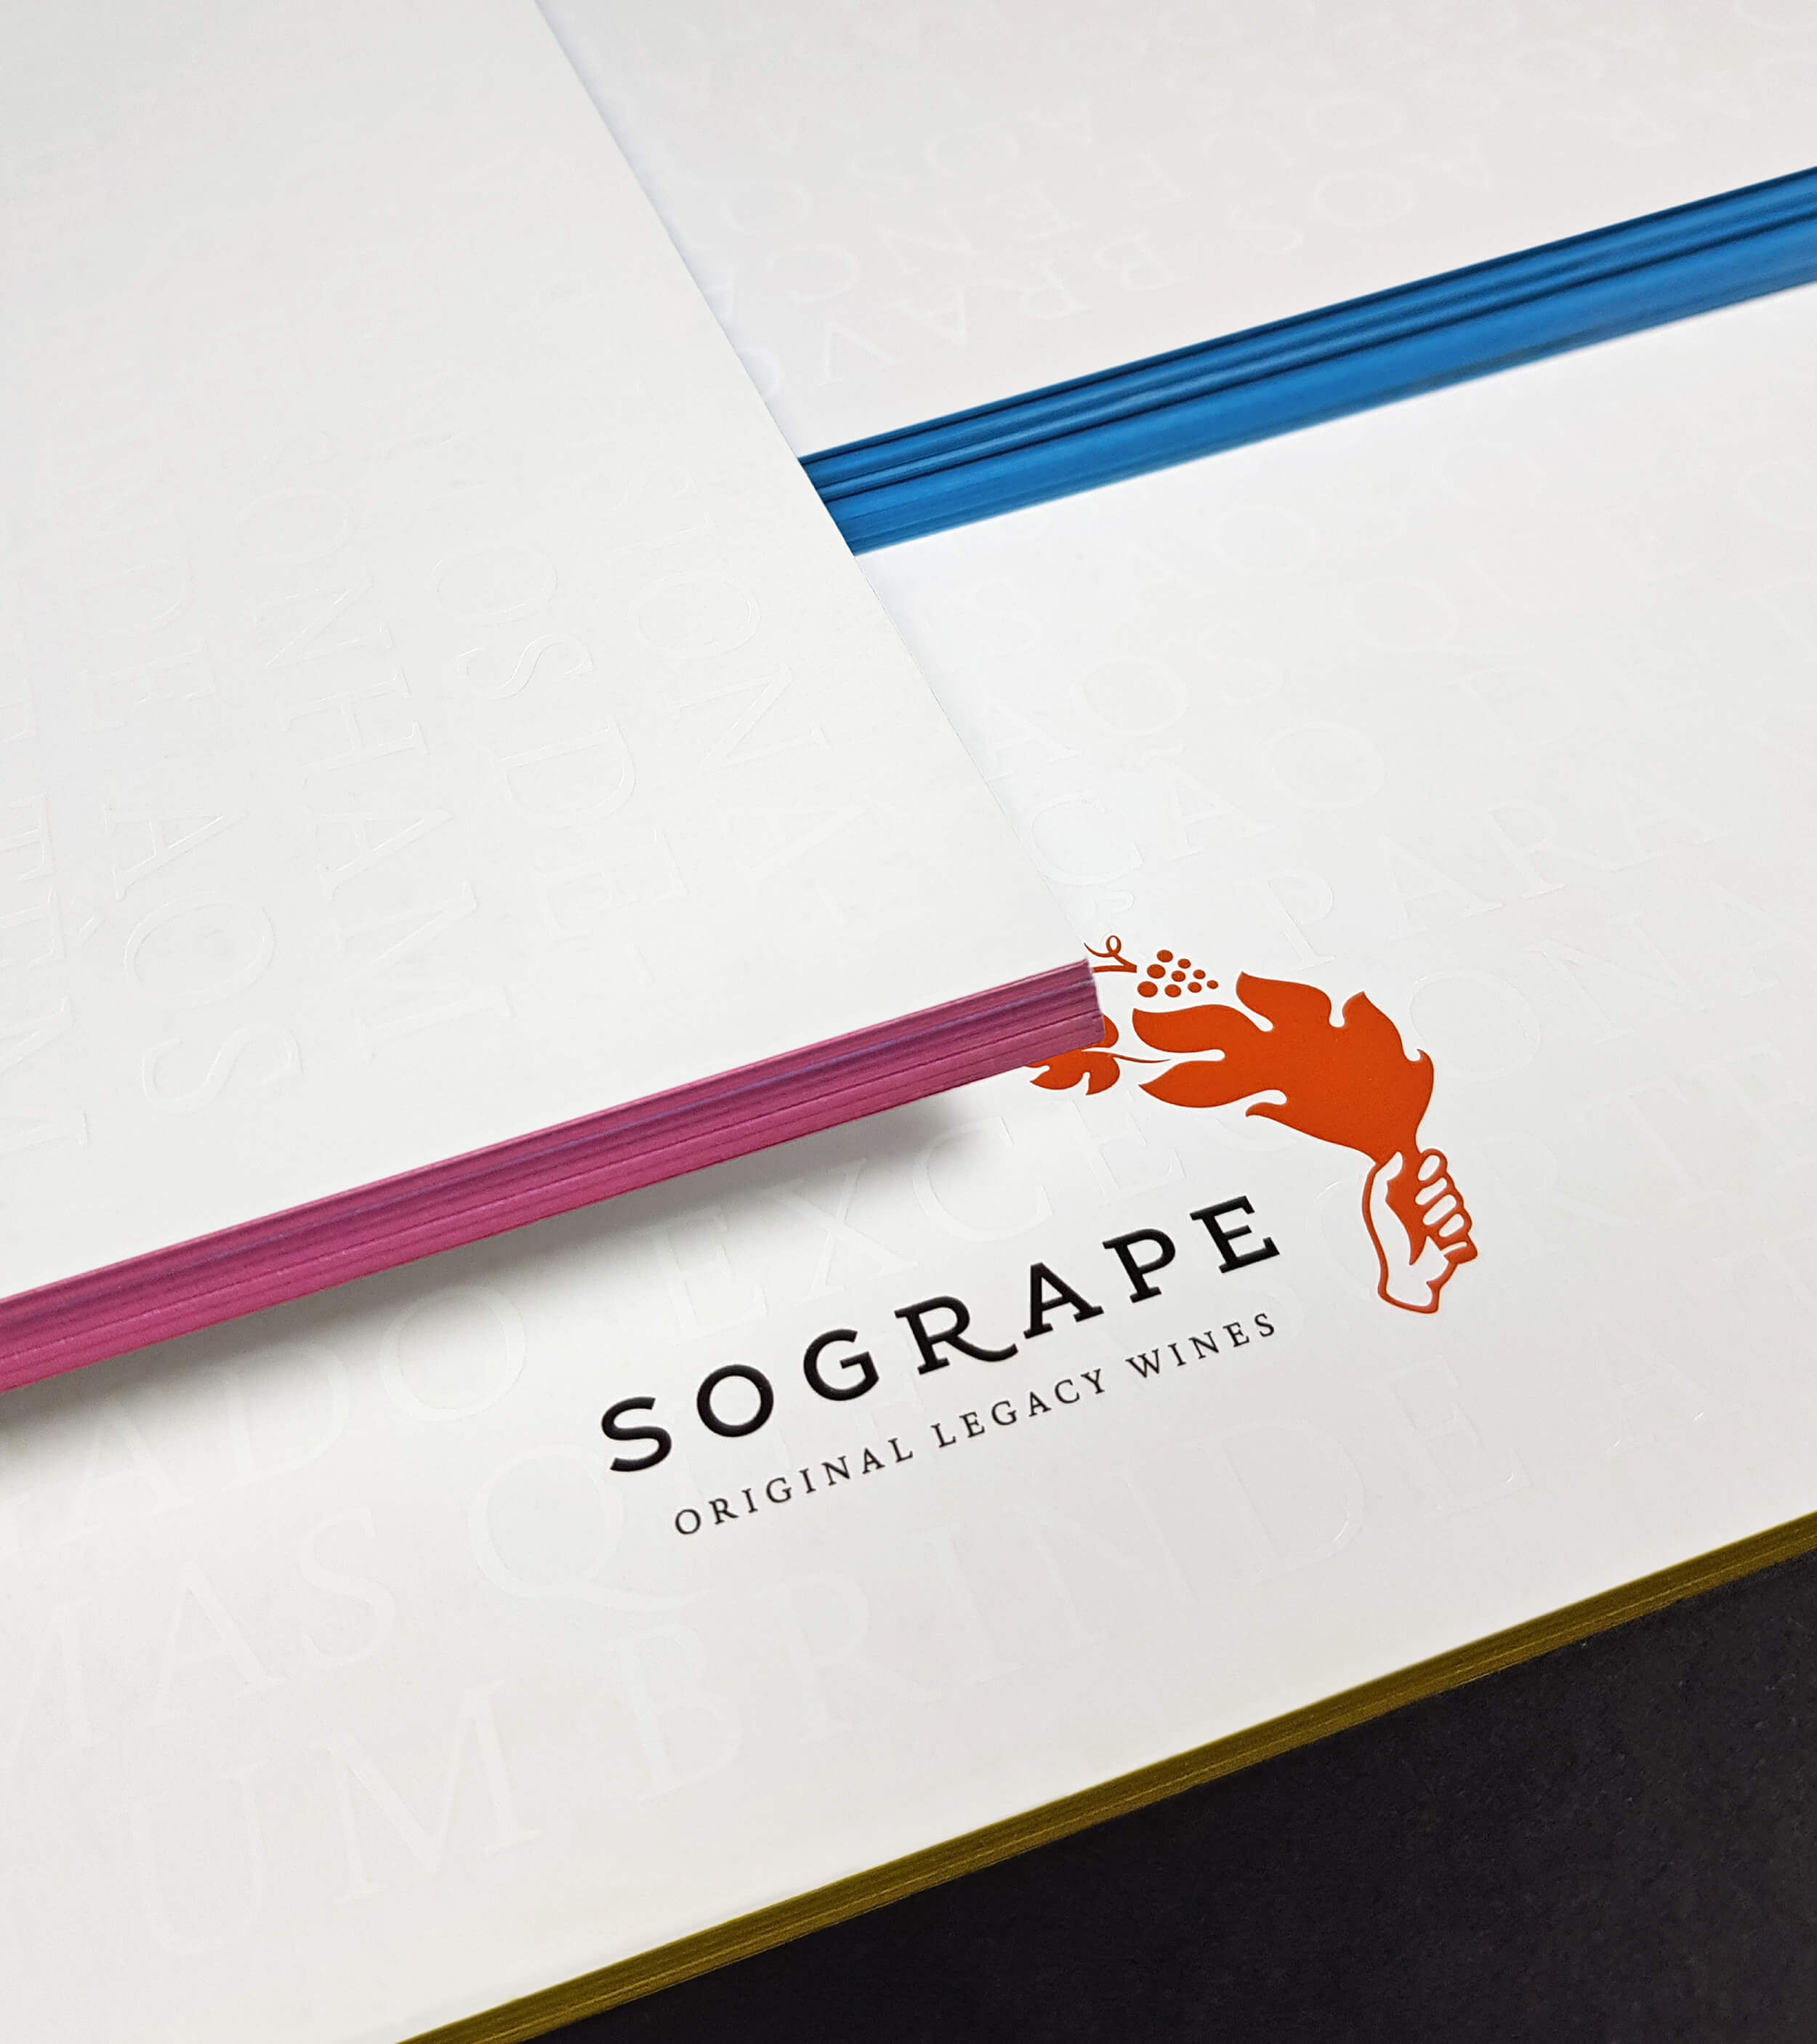 Sogrape Annual Report 2017